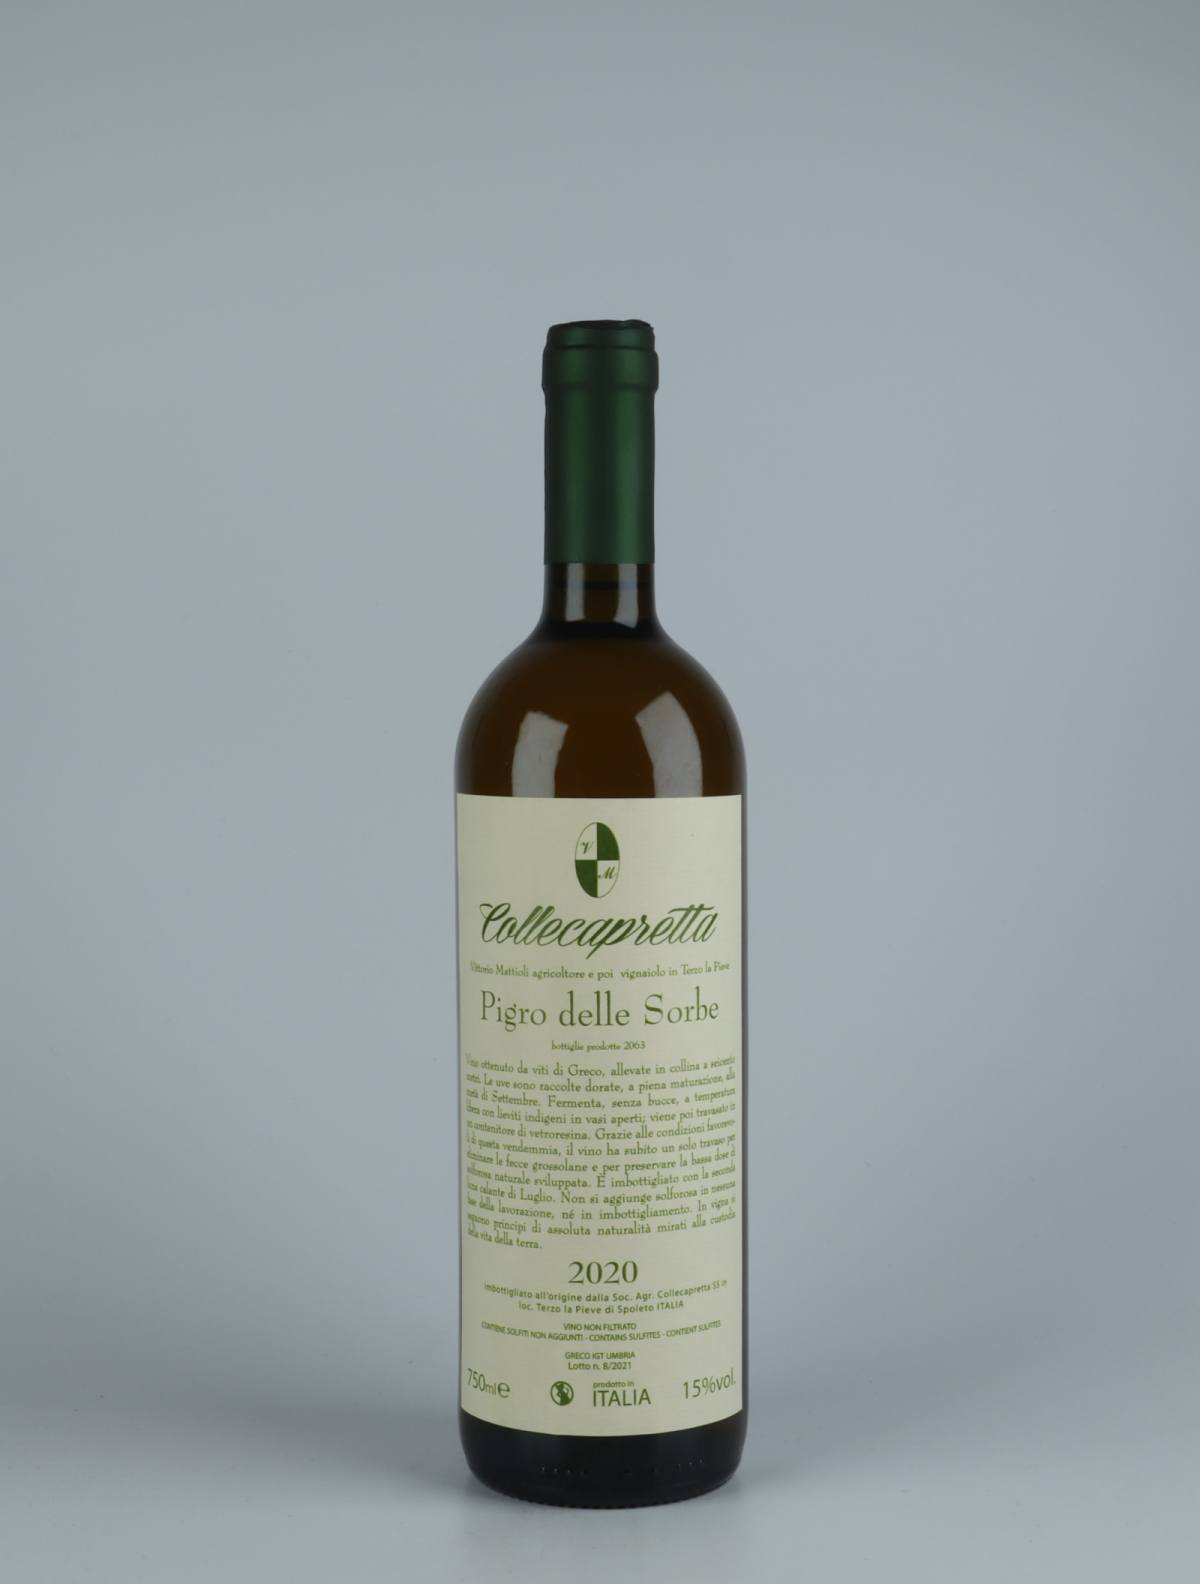 A bottle 2020 Pigro delle Sorbe White wine from Collecapretta, Umbria in Italy